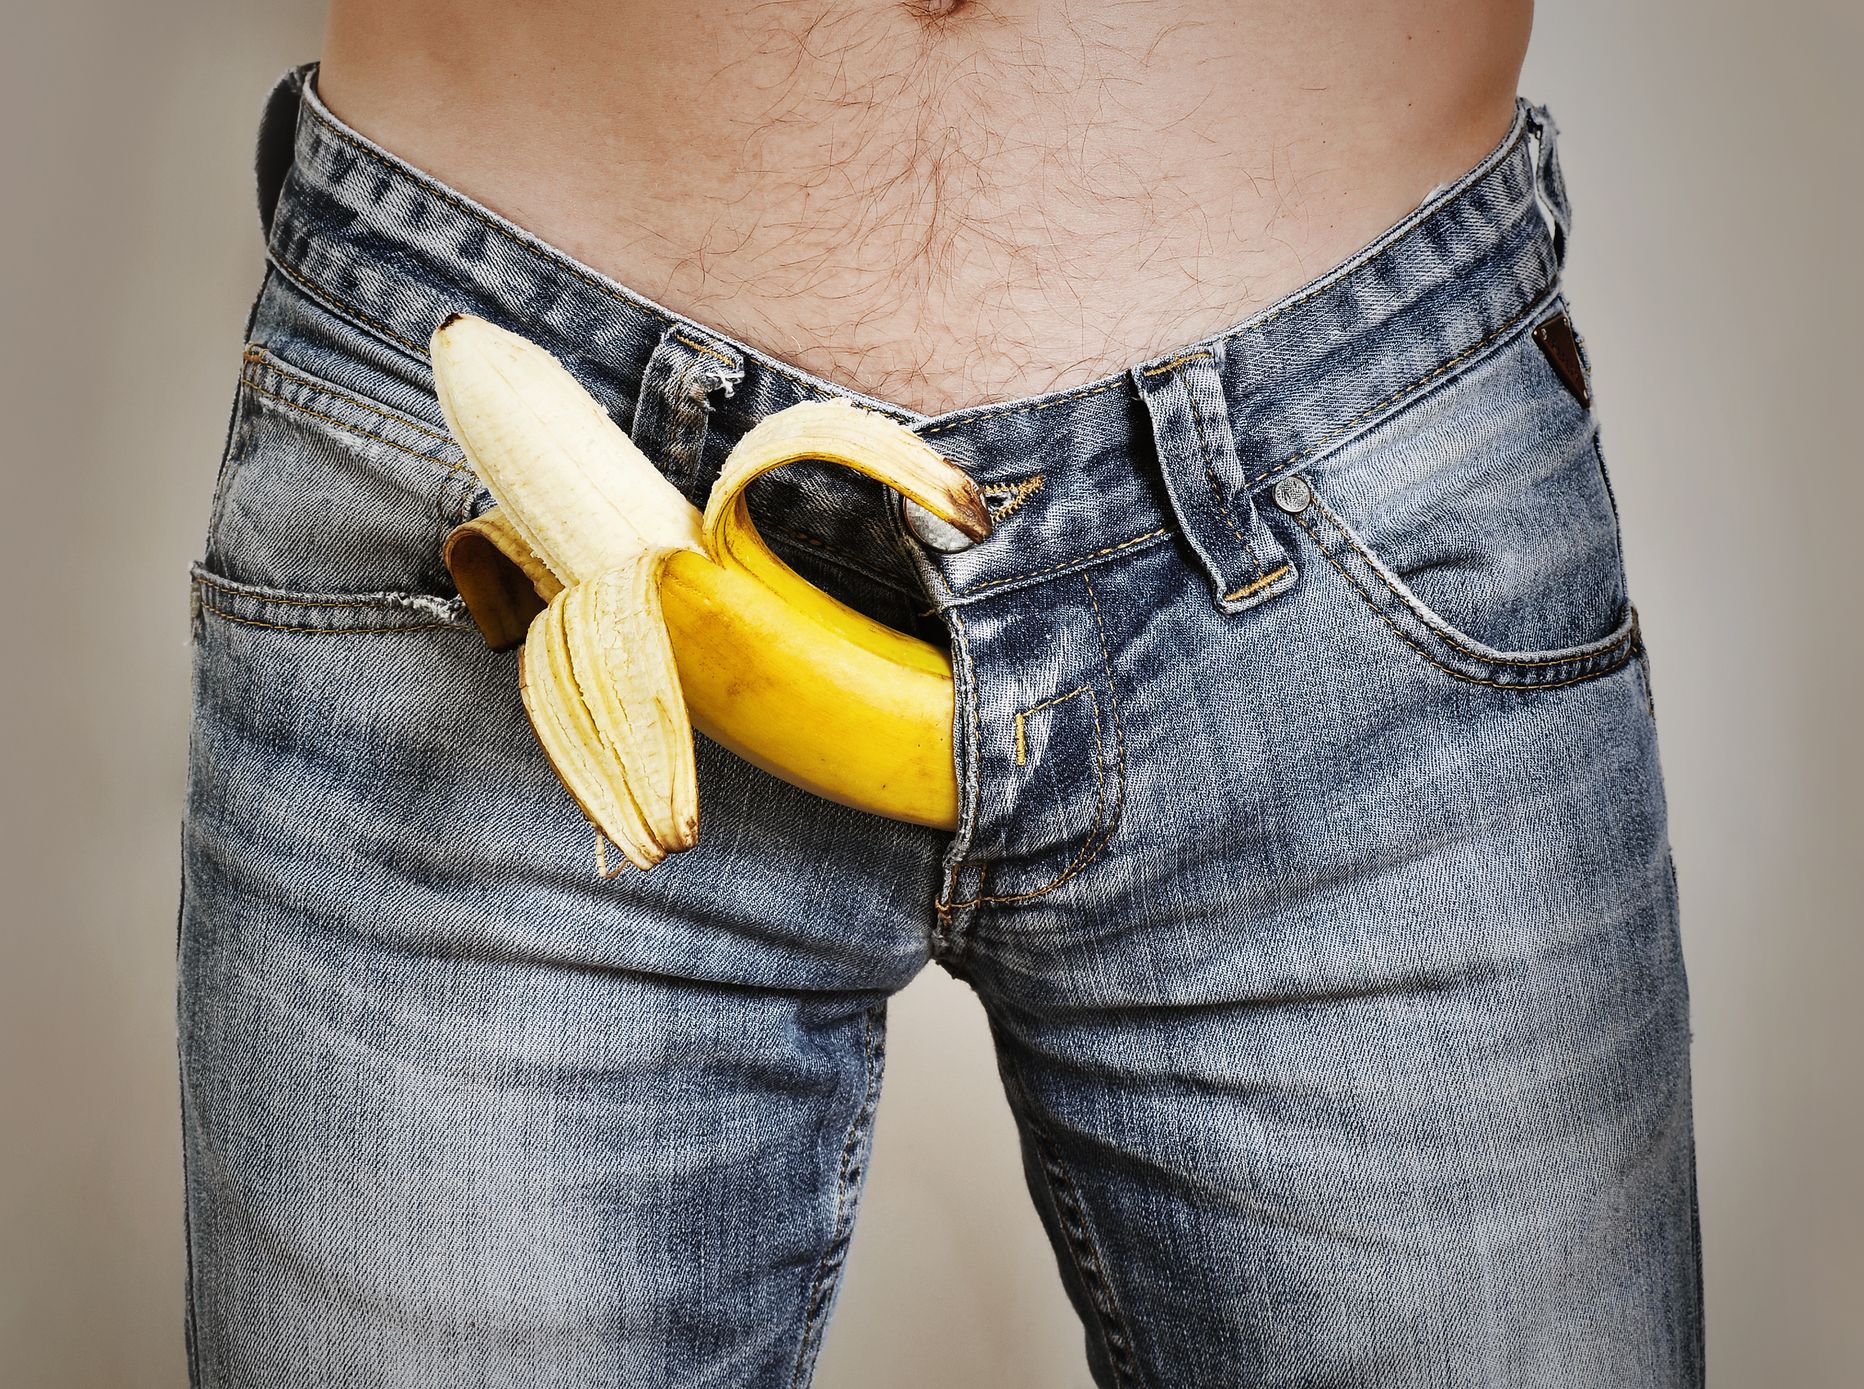 Банан, торчащий из мужских джинсов. Иллюстративное фото